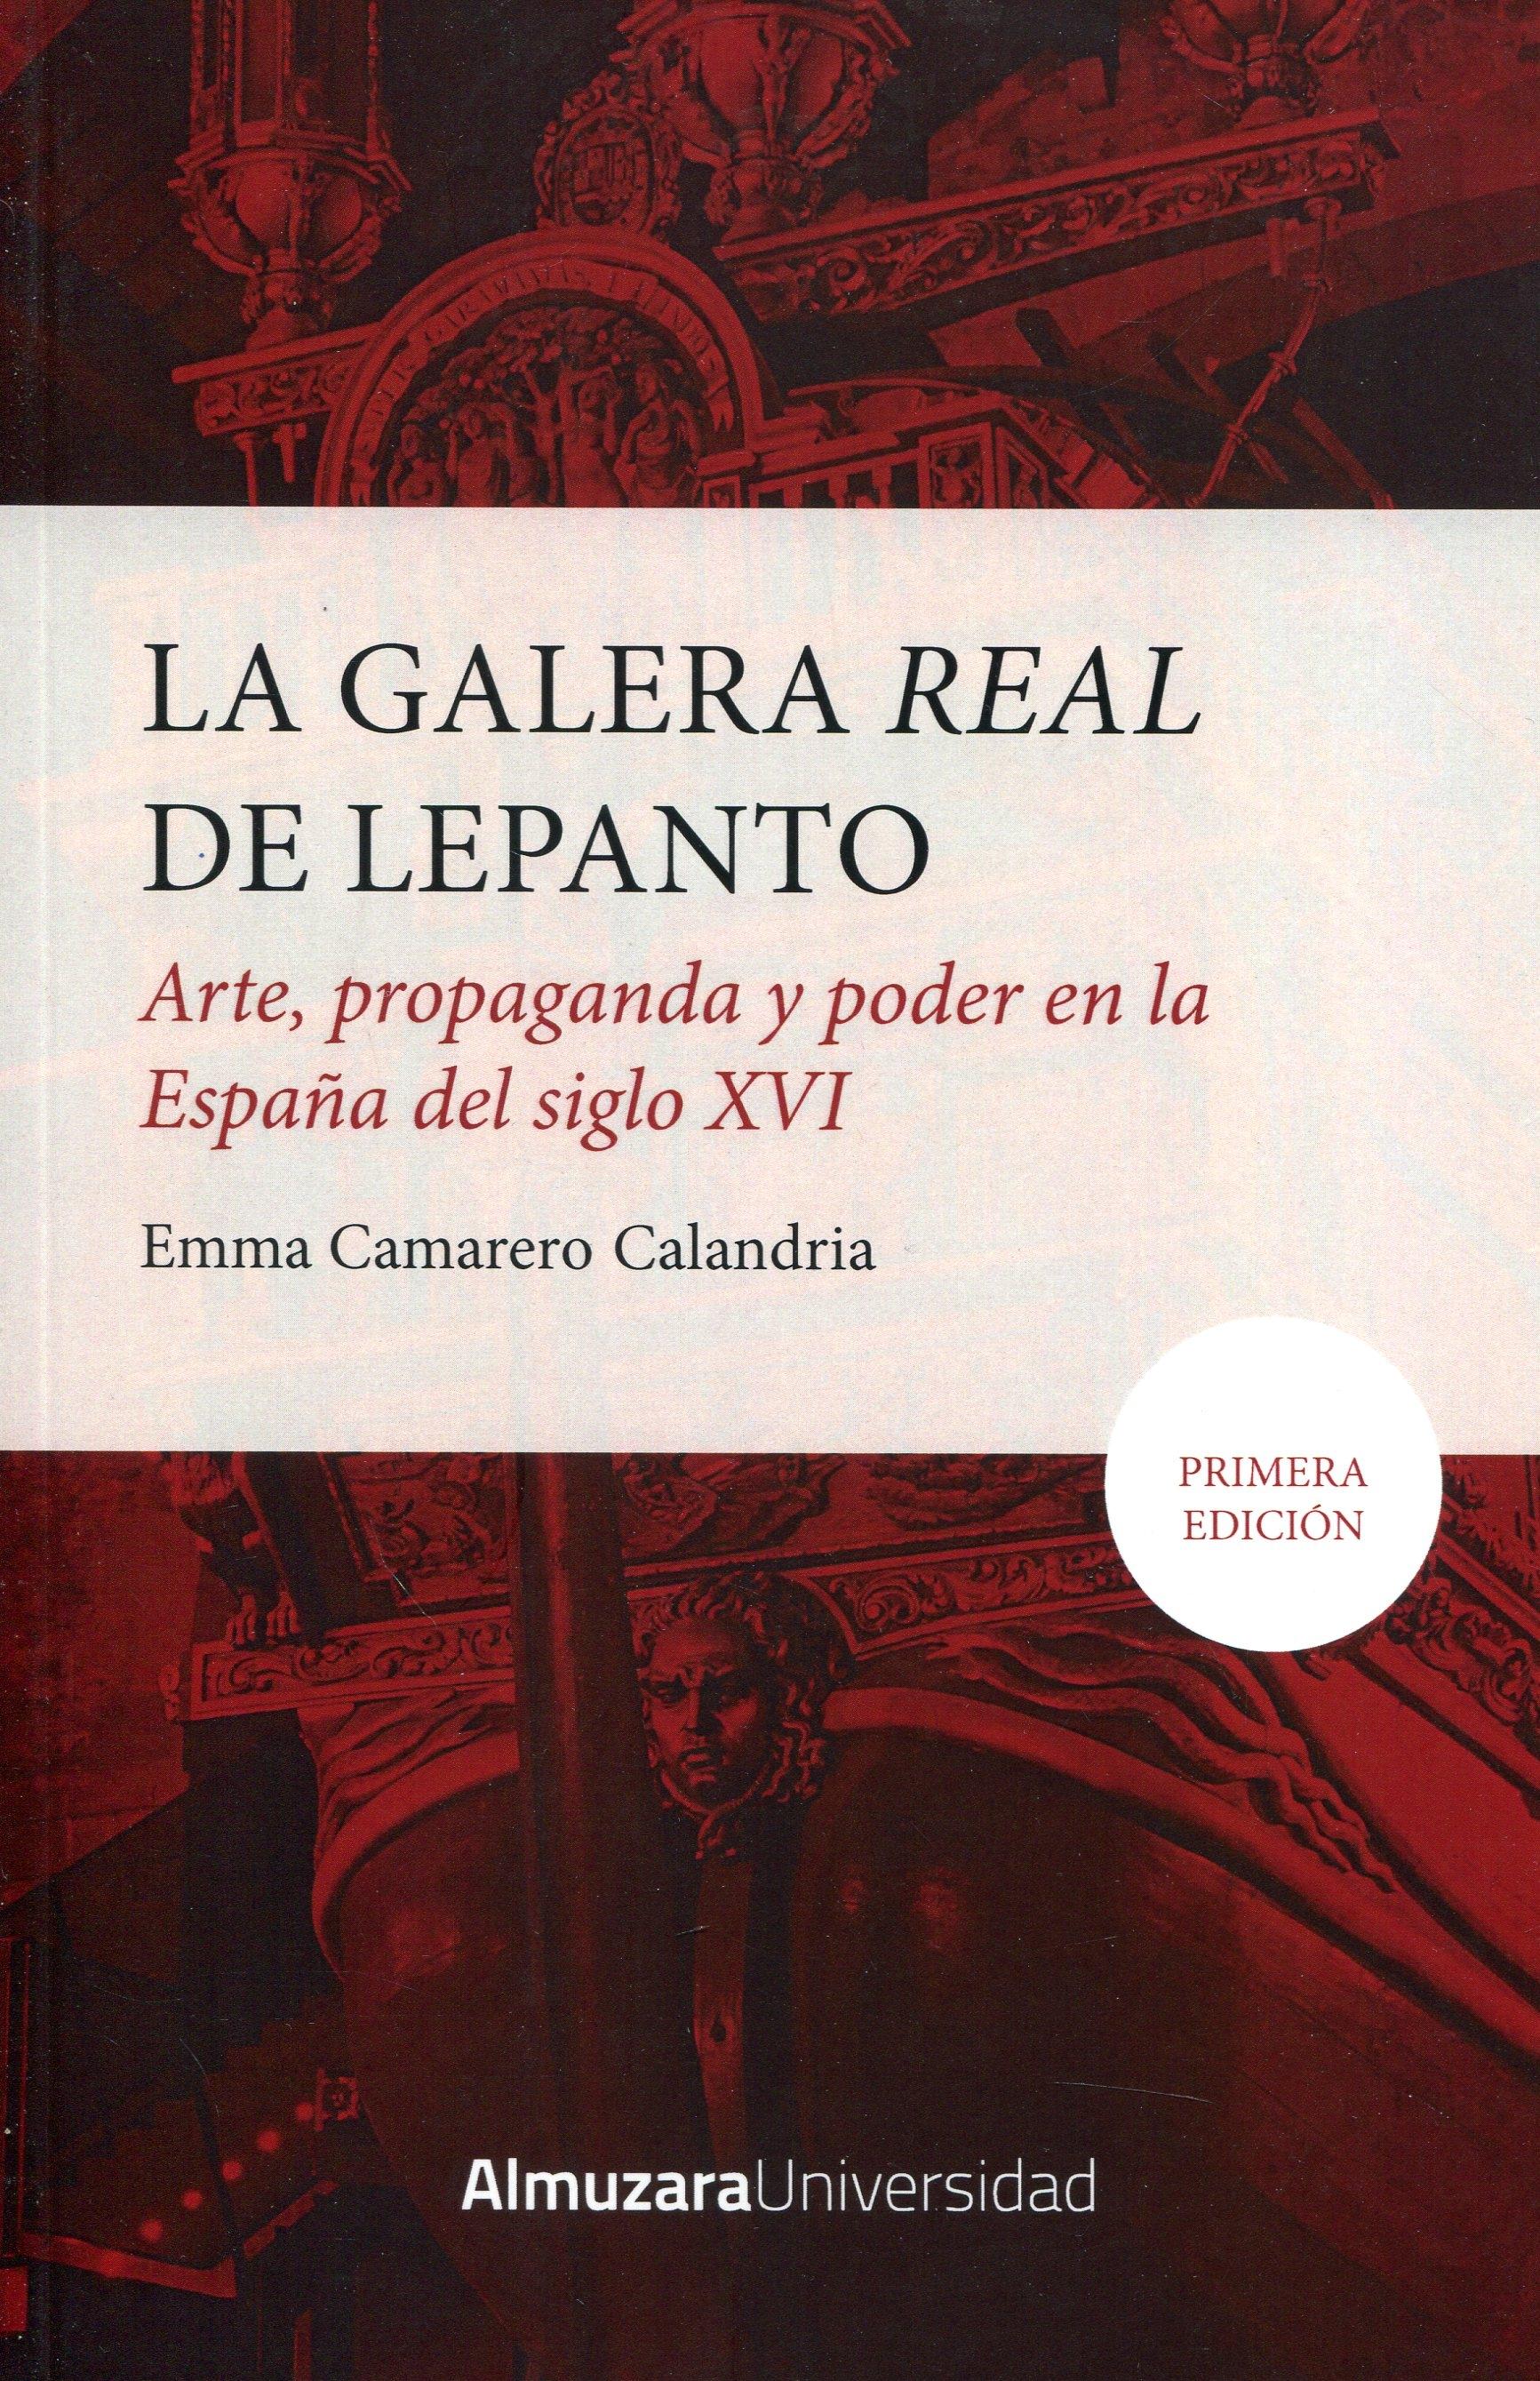 La Galera 'Real' de Lepanto "Arte, propaganda y poder en la España del siglo XVI"